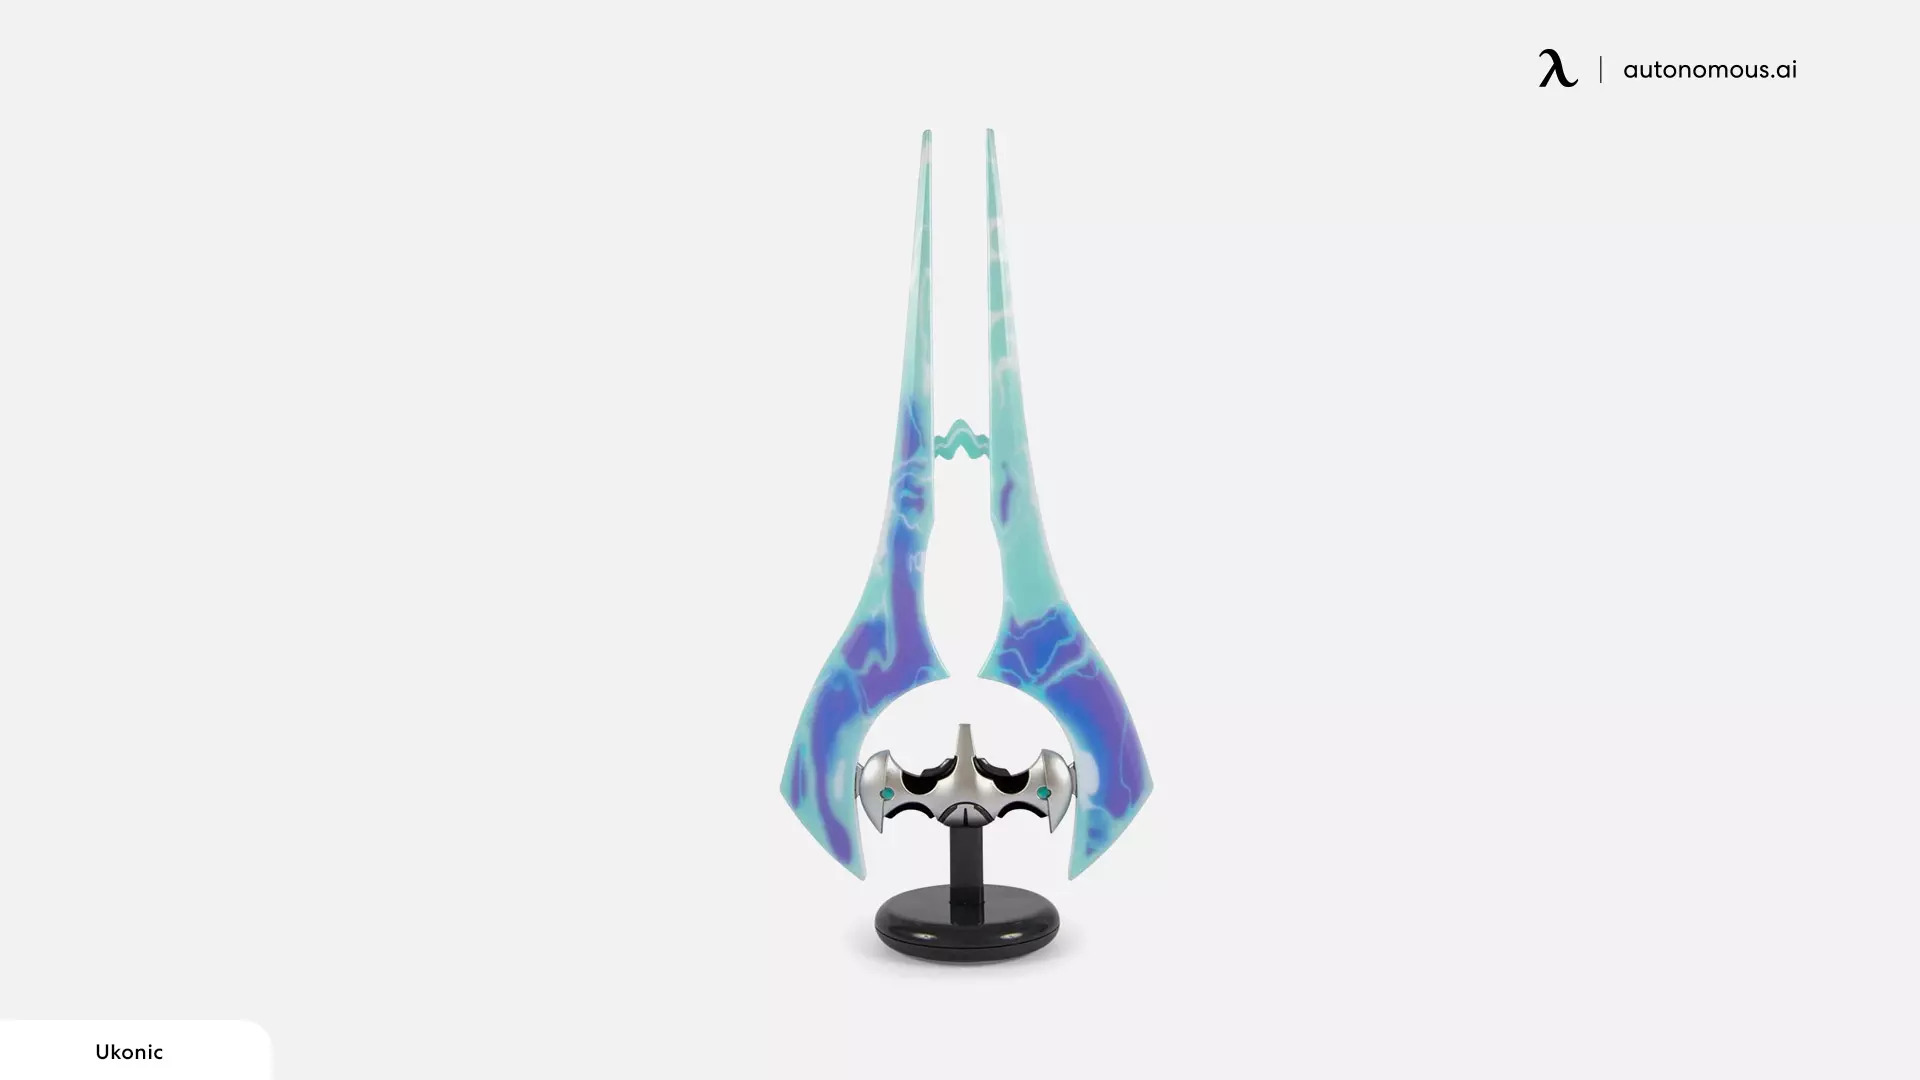 Toynk Halo Energy Sword Desktop Lamp